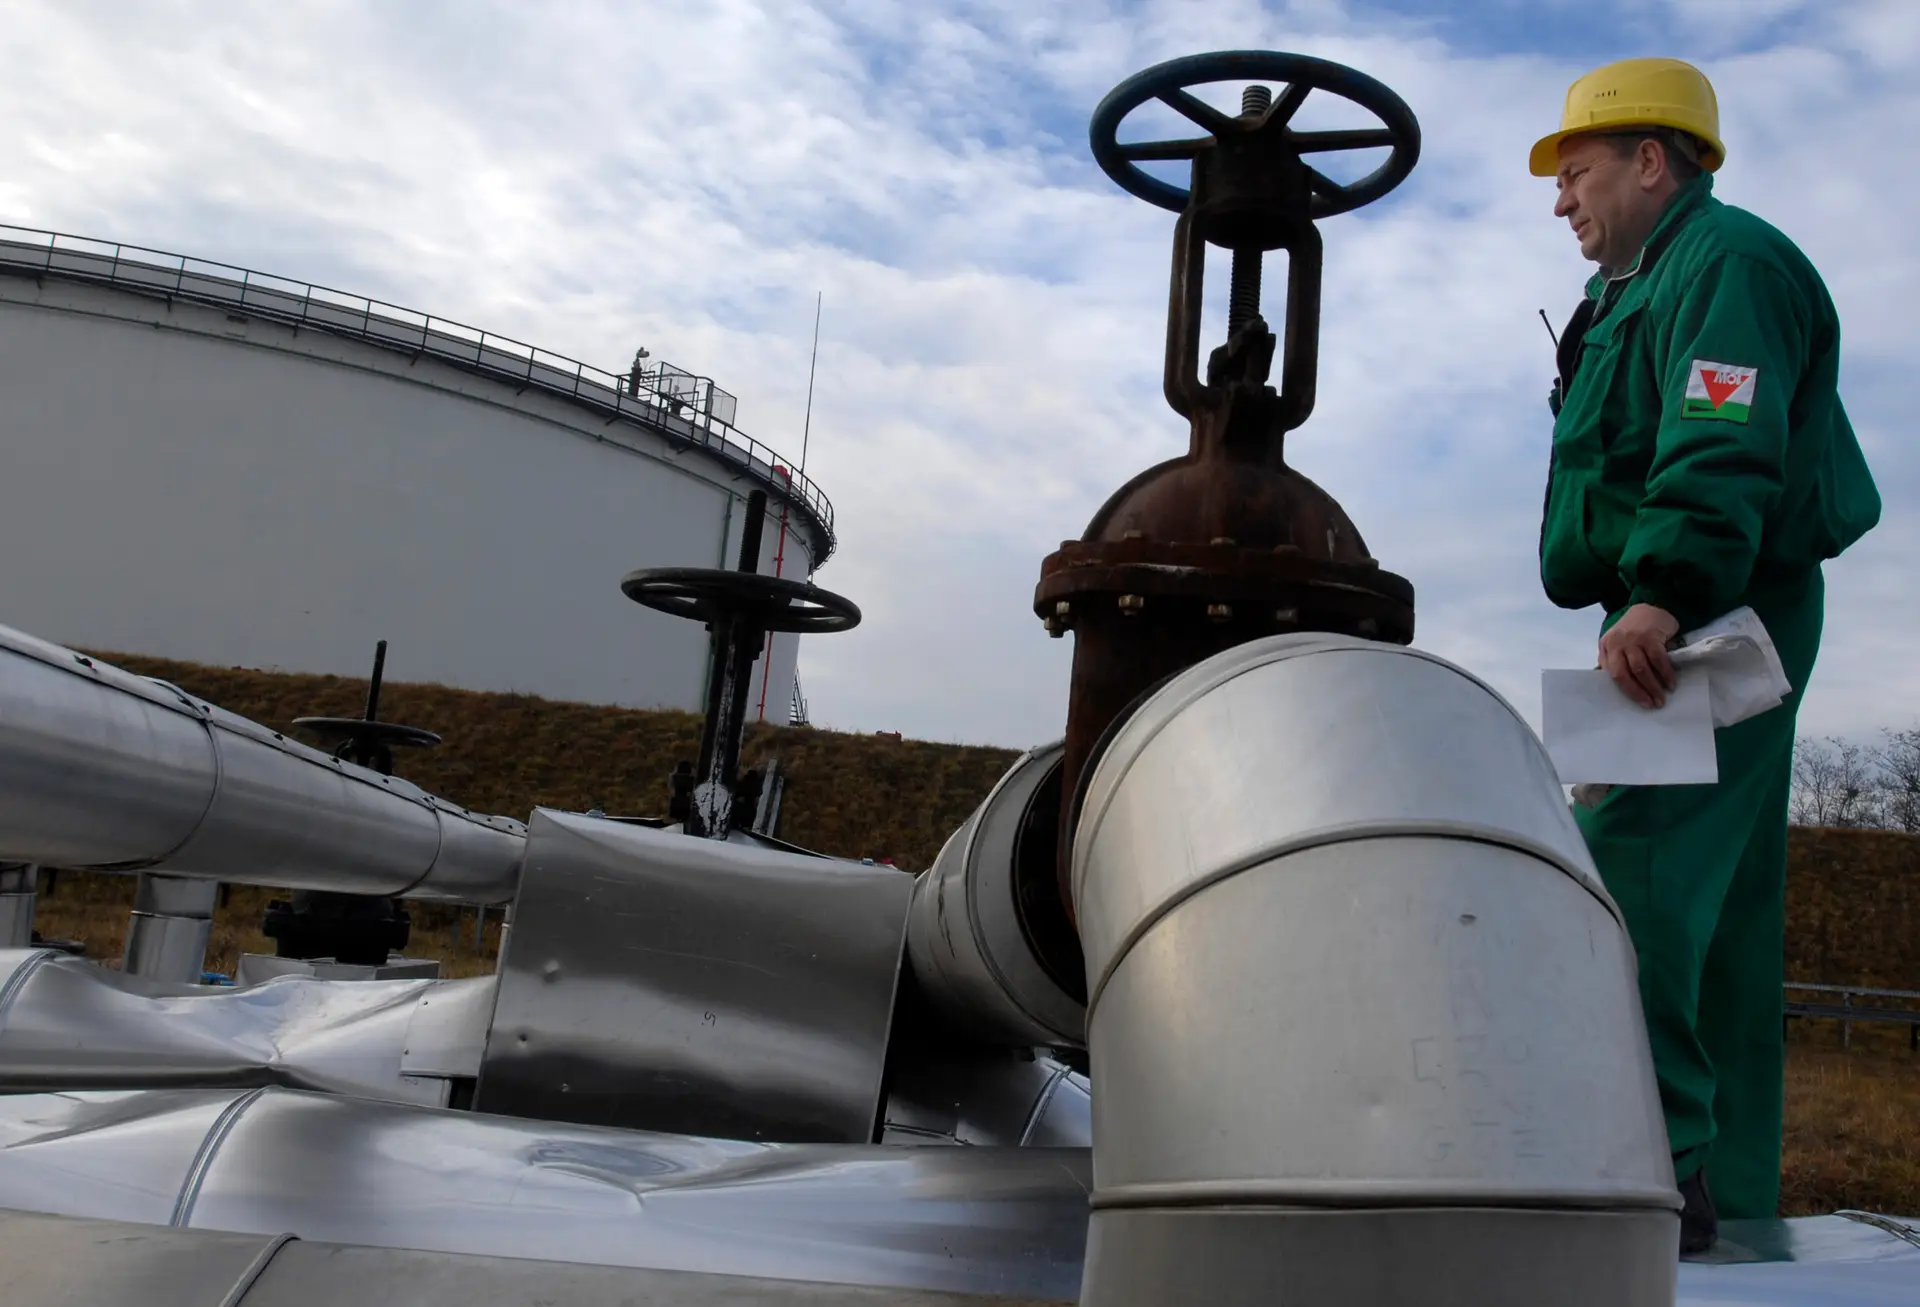 Fuga em oleoduto russo provoca derrame de petróleo de 200 metros quadrados